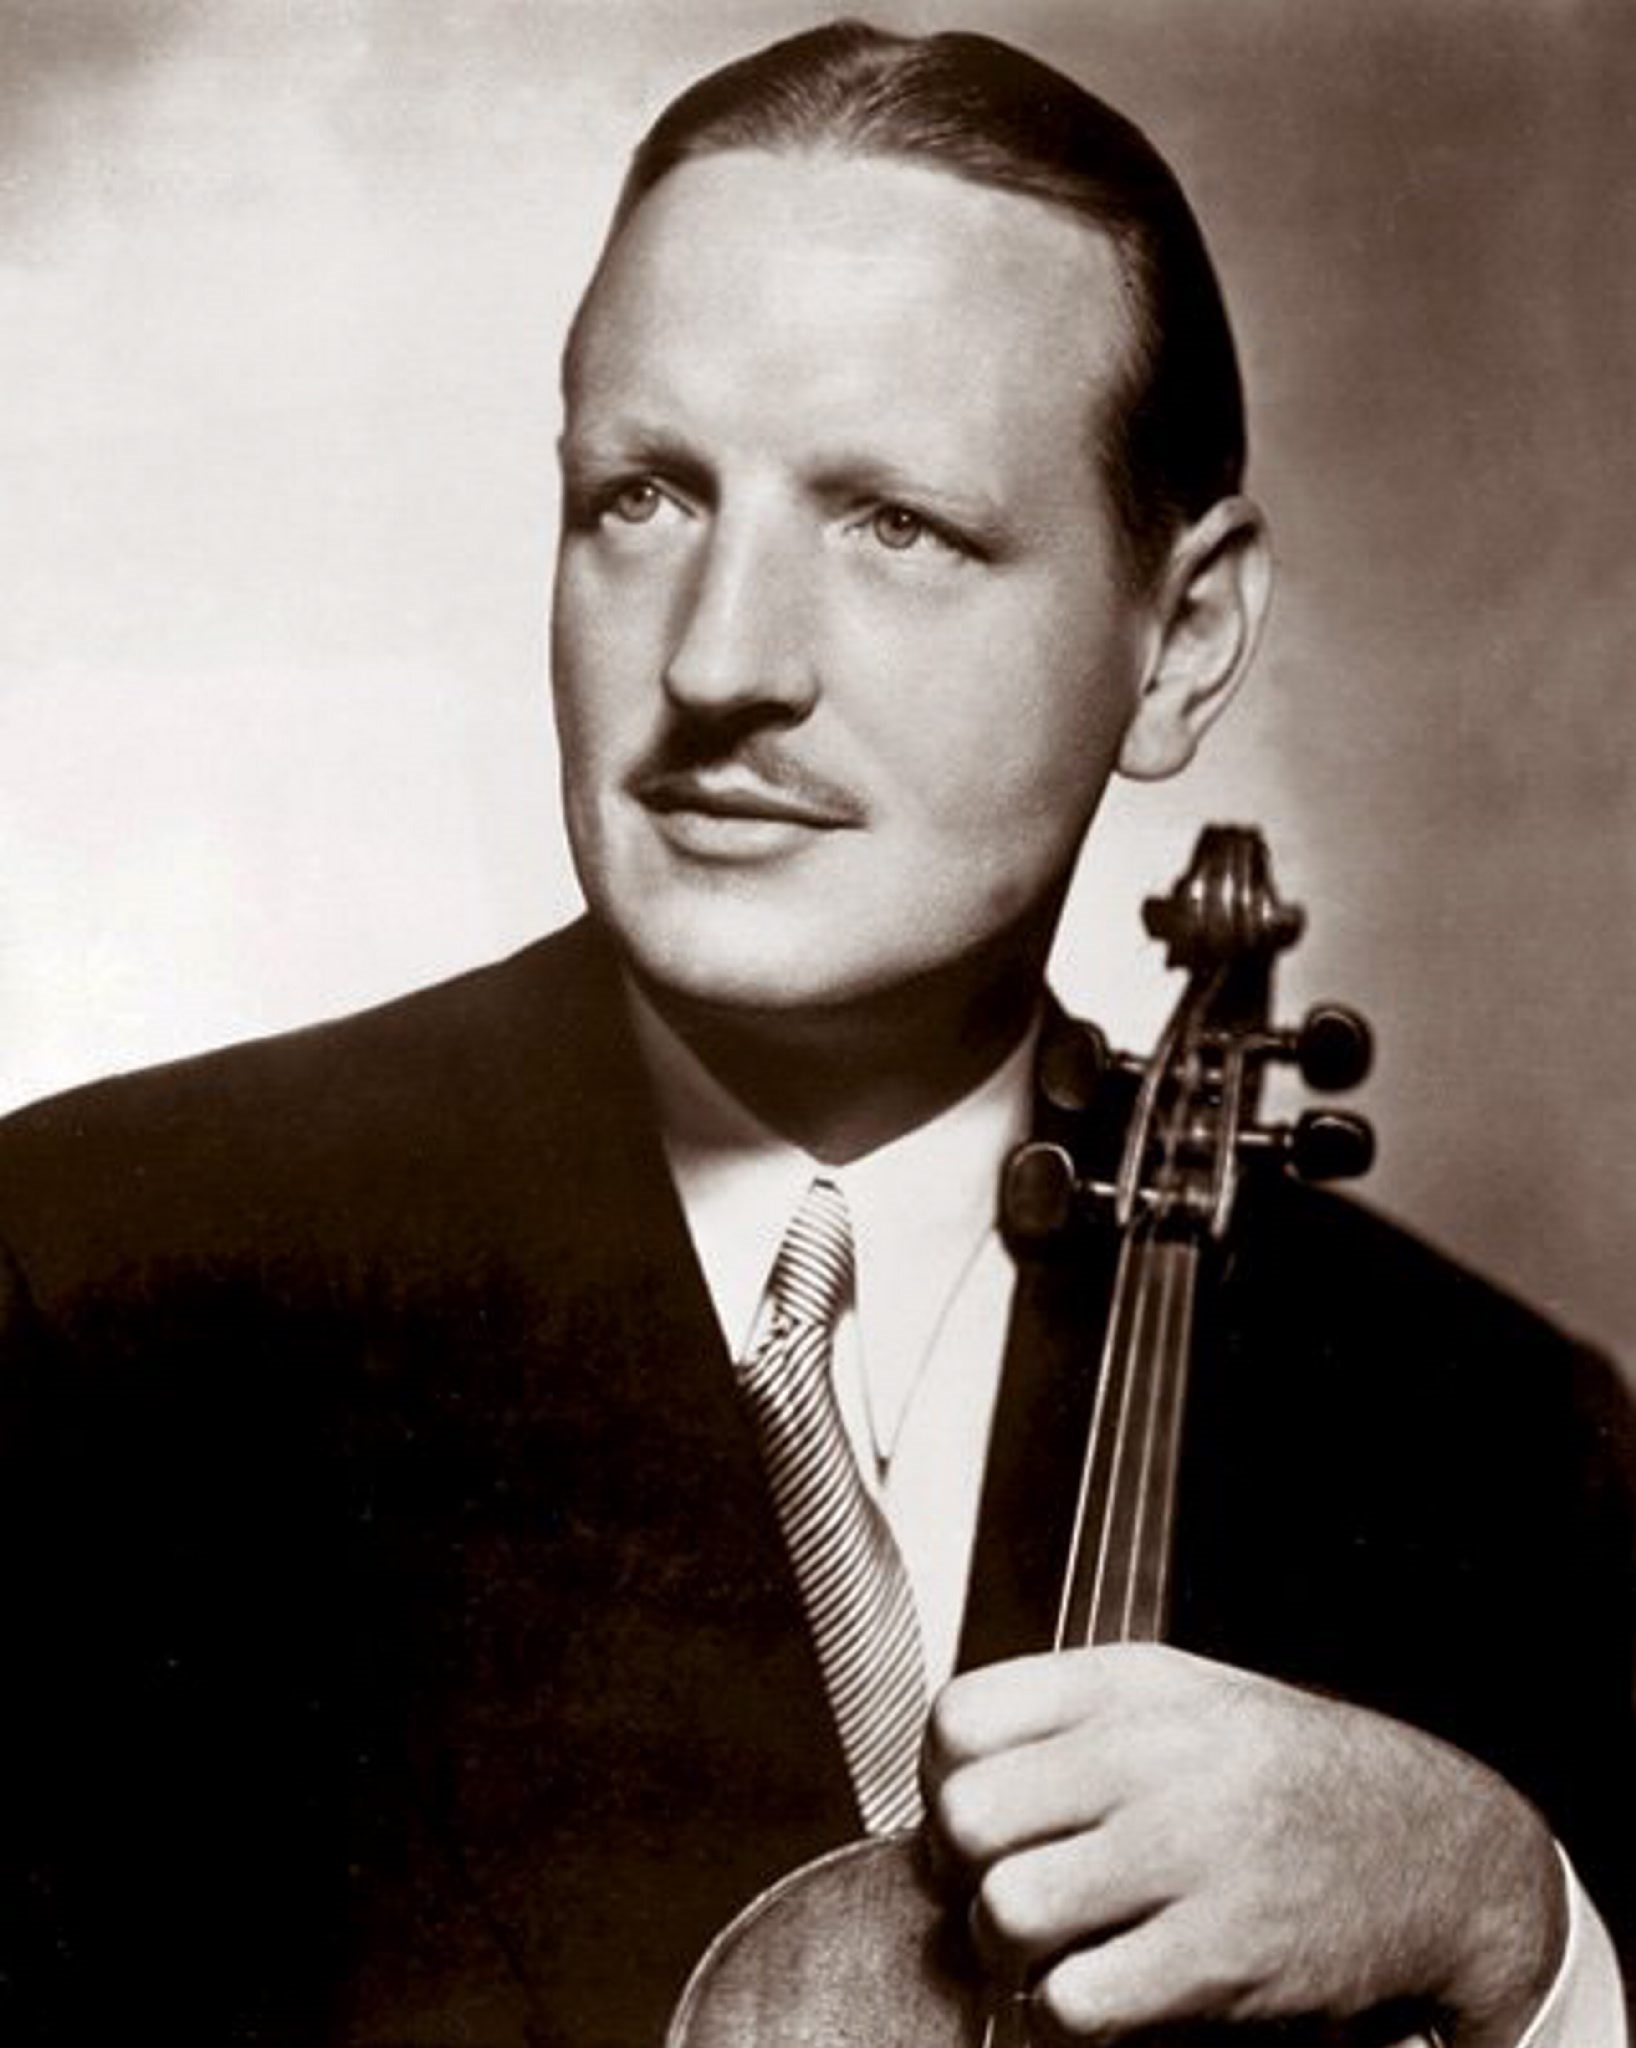 William Primrose, Glasgow violist.